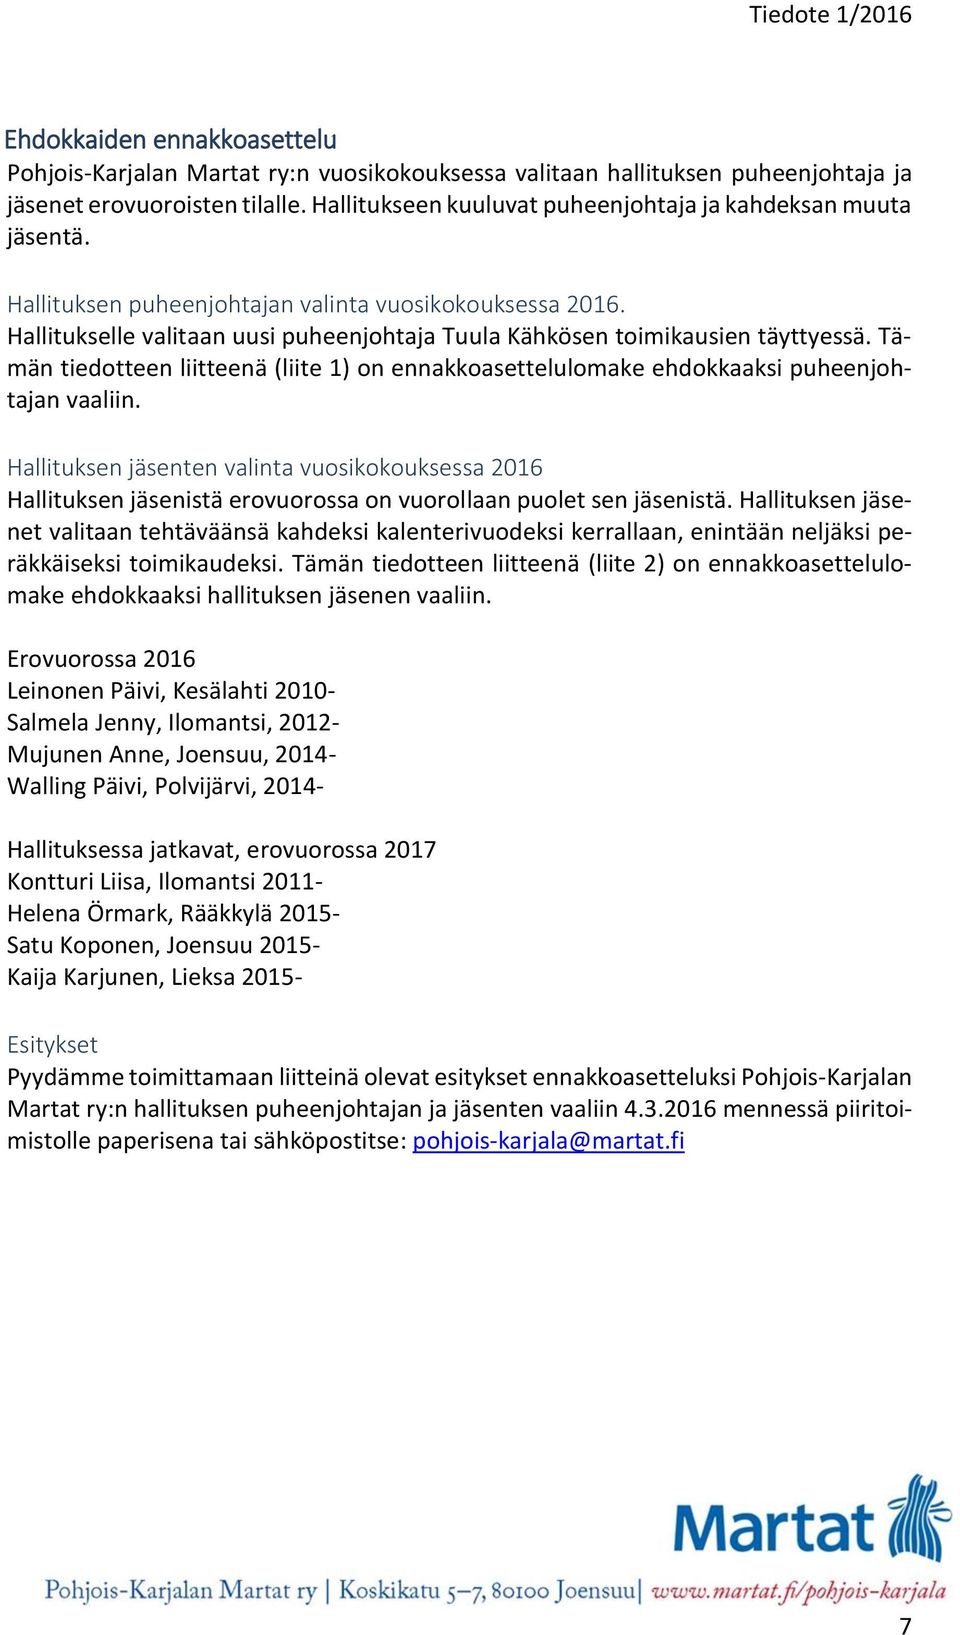 Hallitukselle valitaan uusi puheenjohtaja Tuula Kähkösen toimikausien täyttyessä. Tämän tiedotteen liitteenä (liite 1) on ennakkoasettelulomake ehdokkaaksi puheenjohtajan vaaliin.